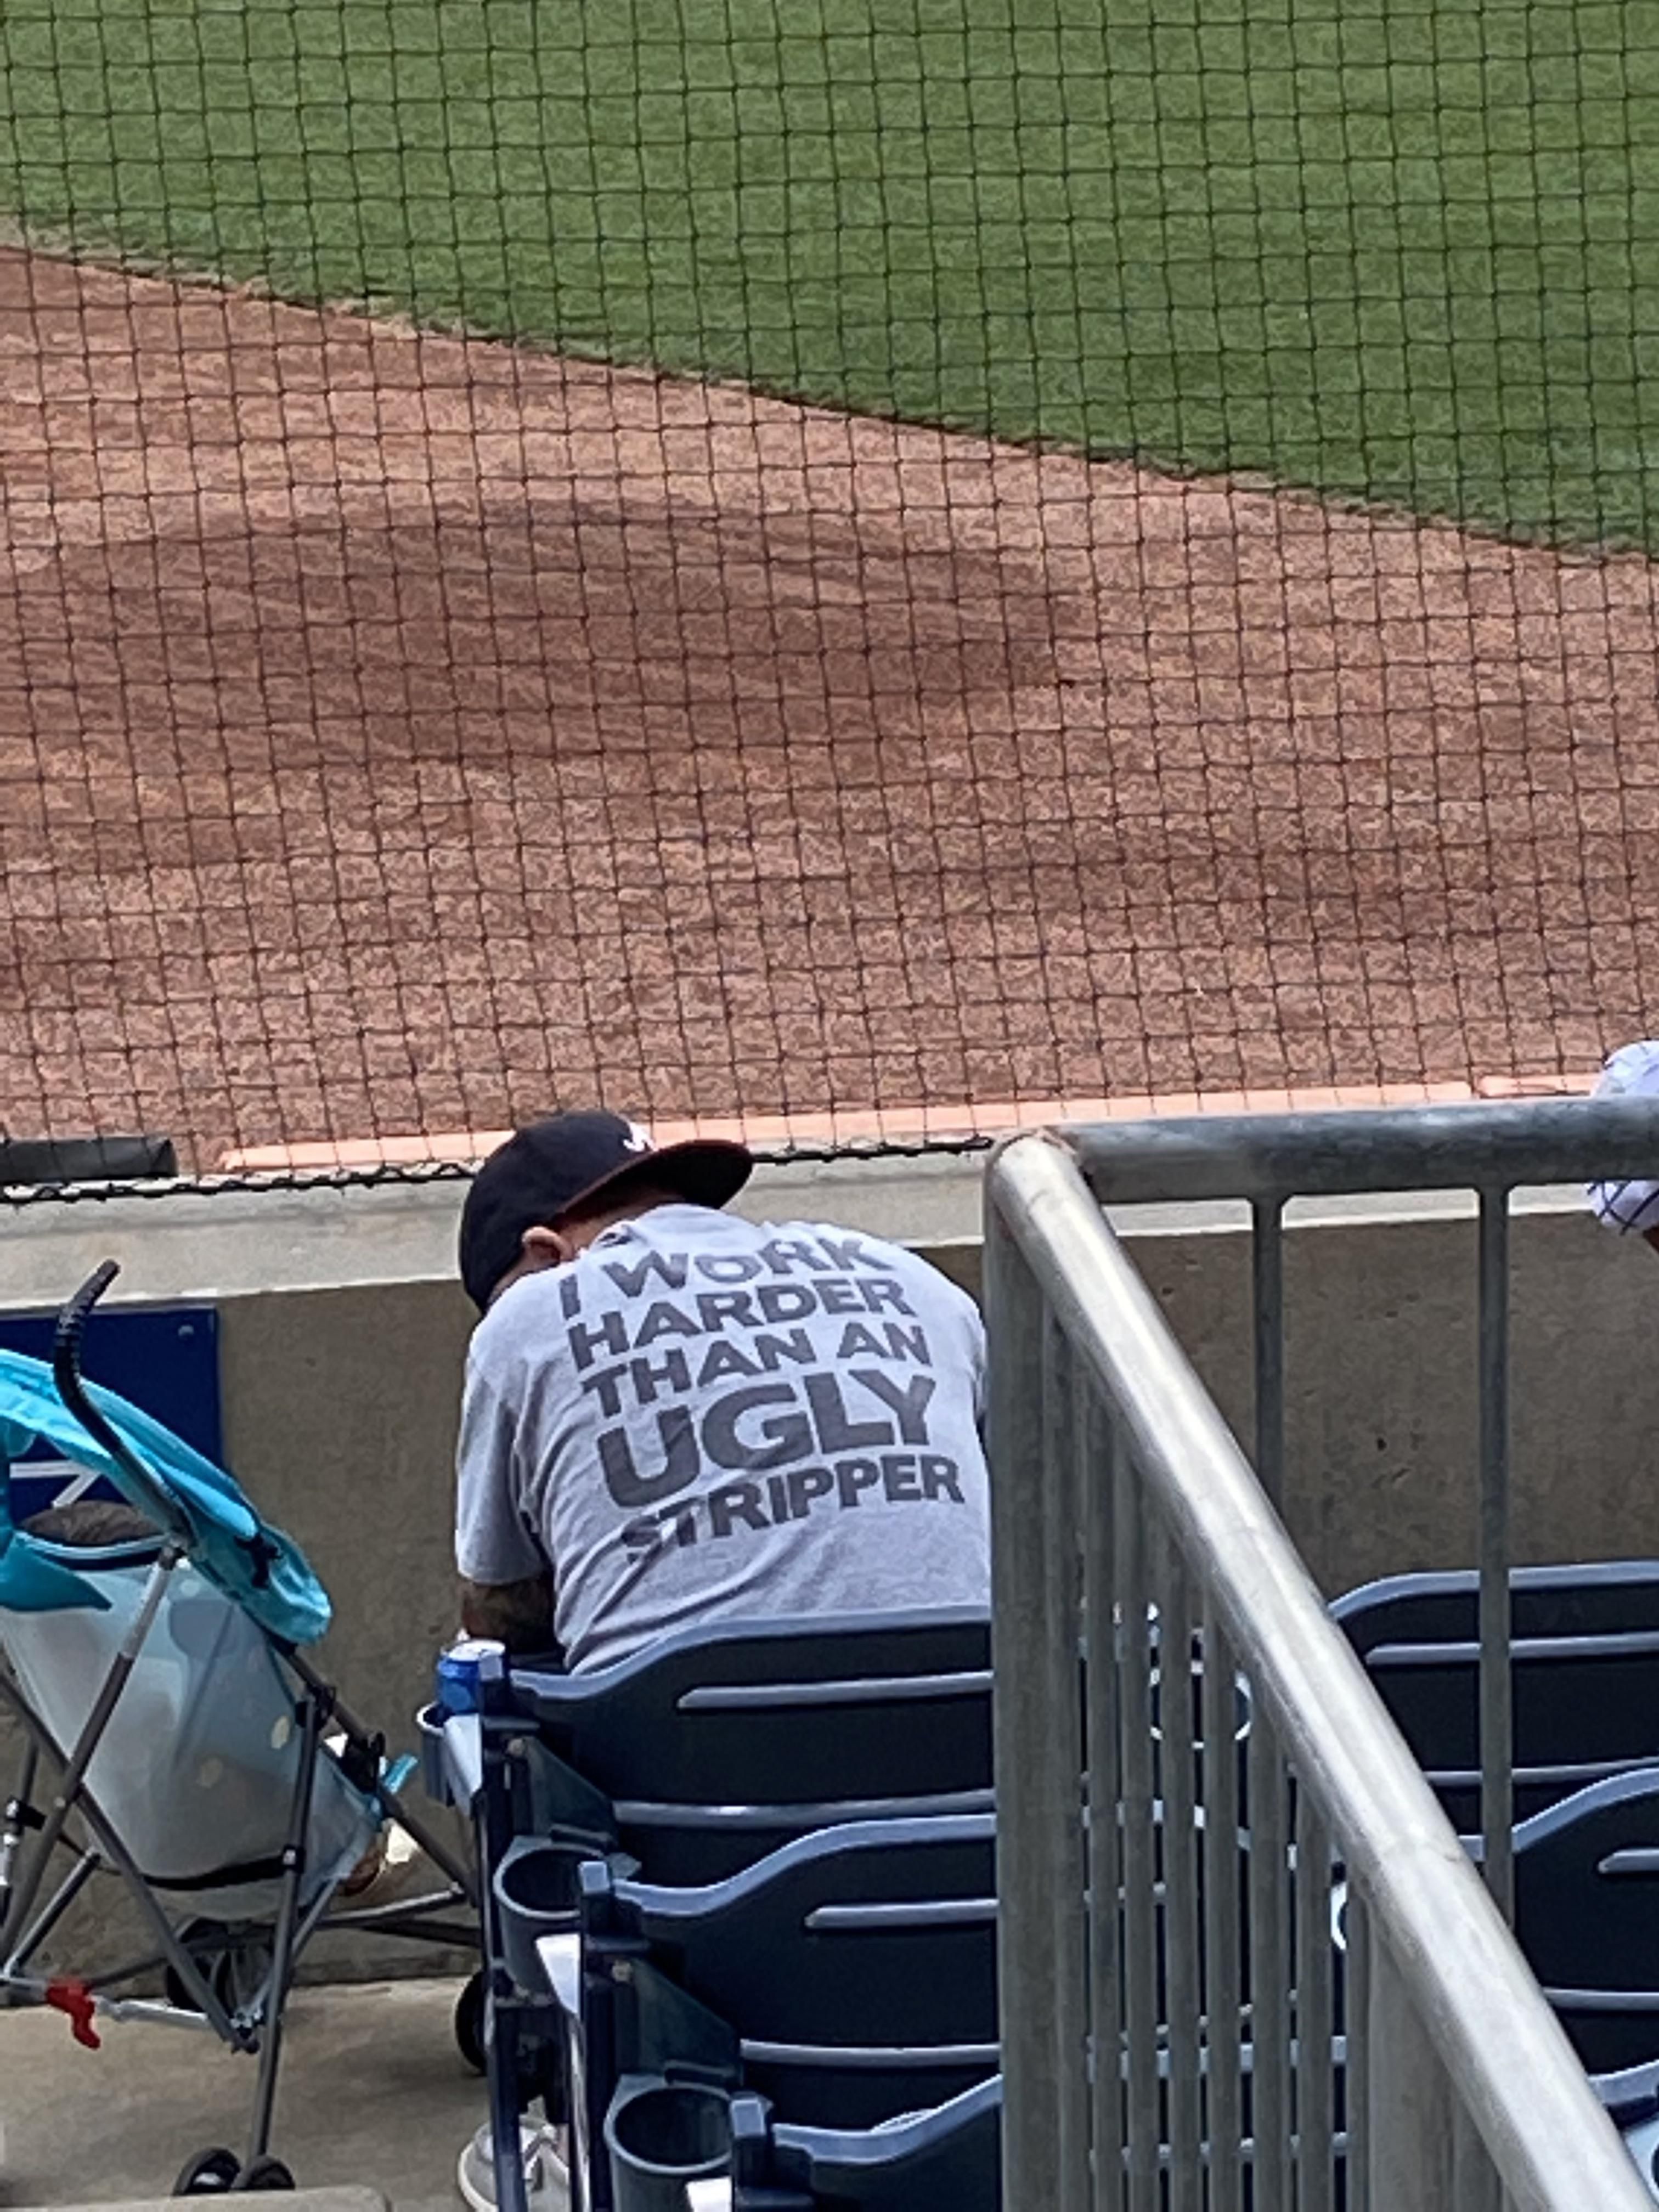 shirt i saw at a baseball game